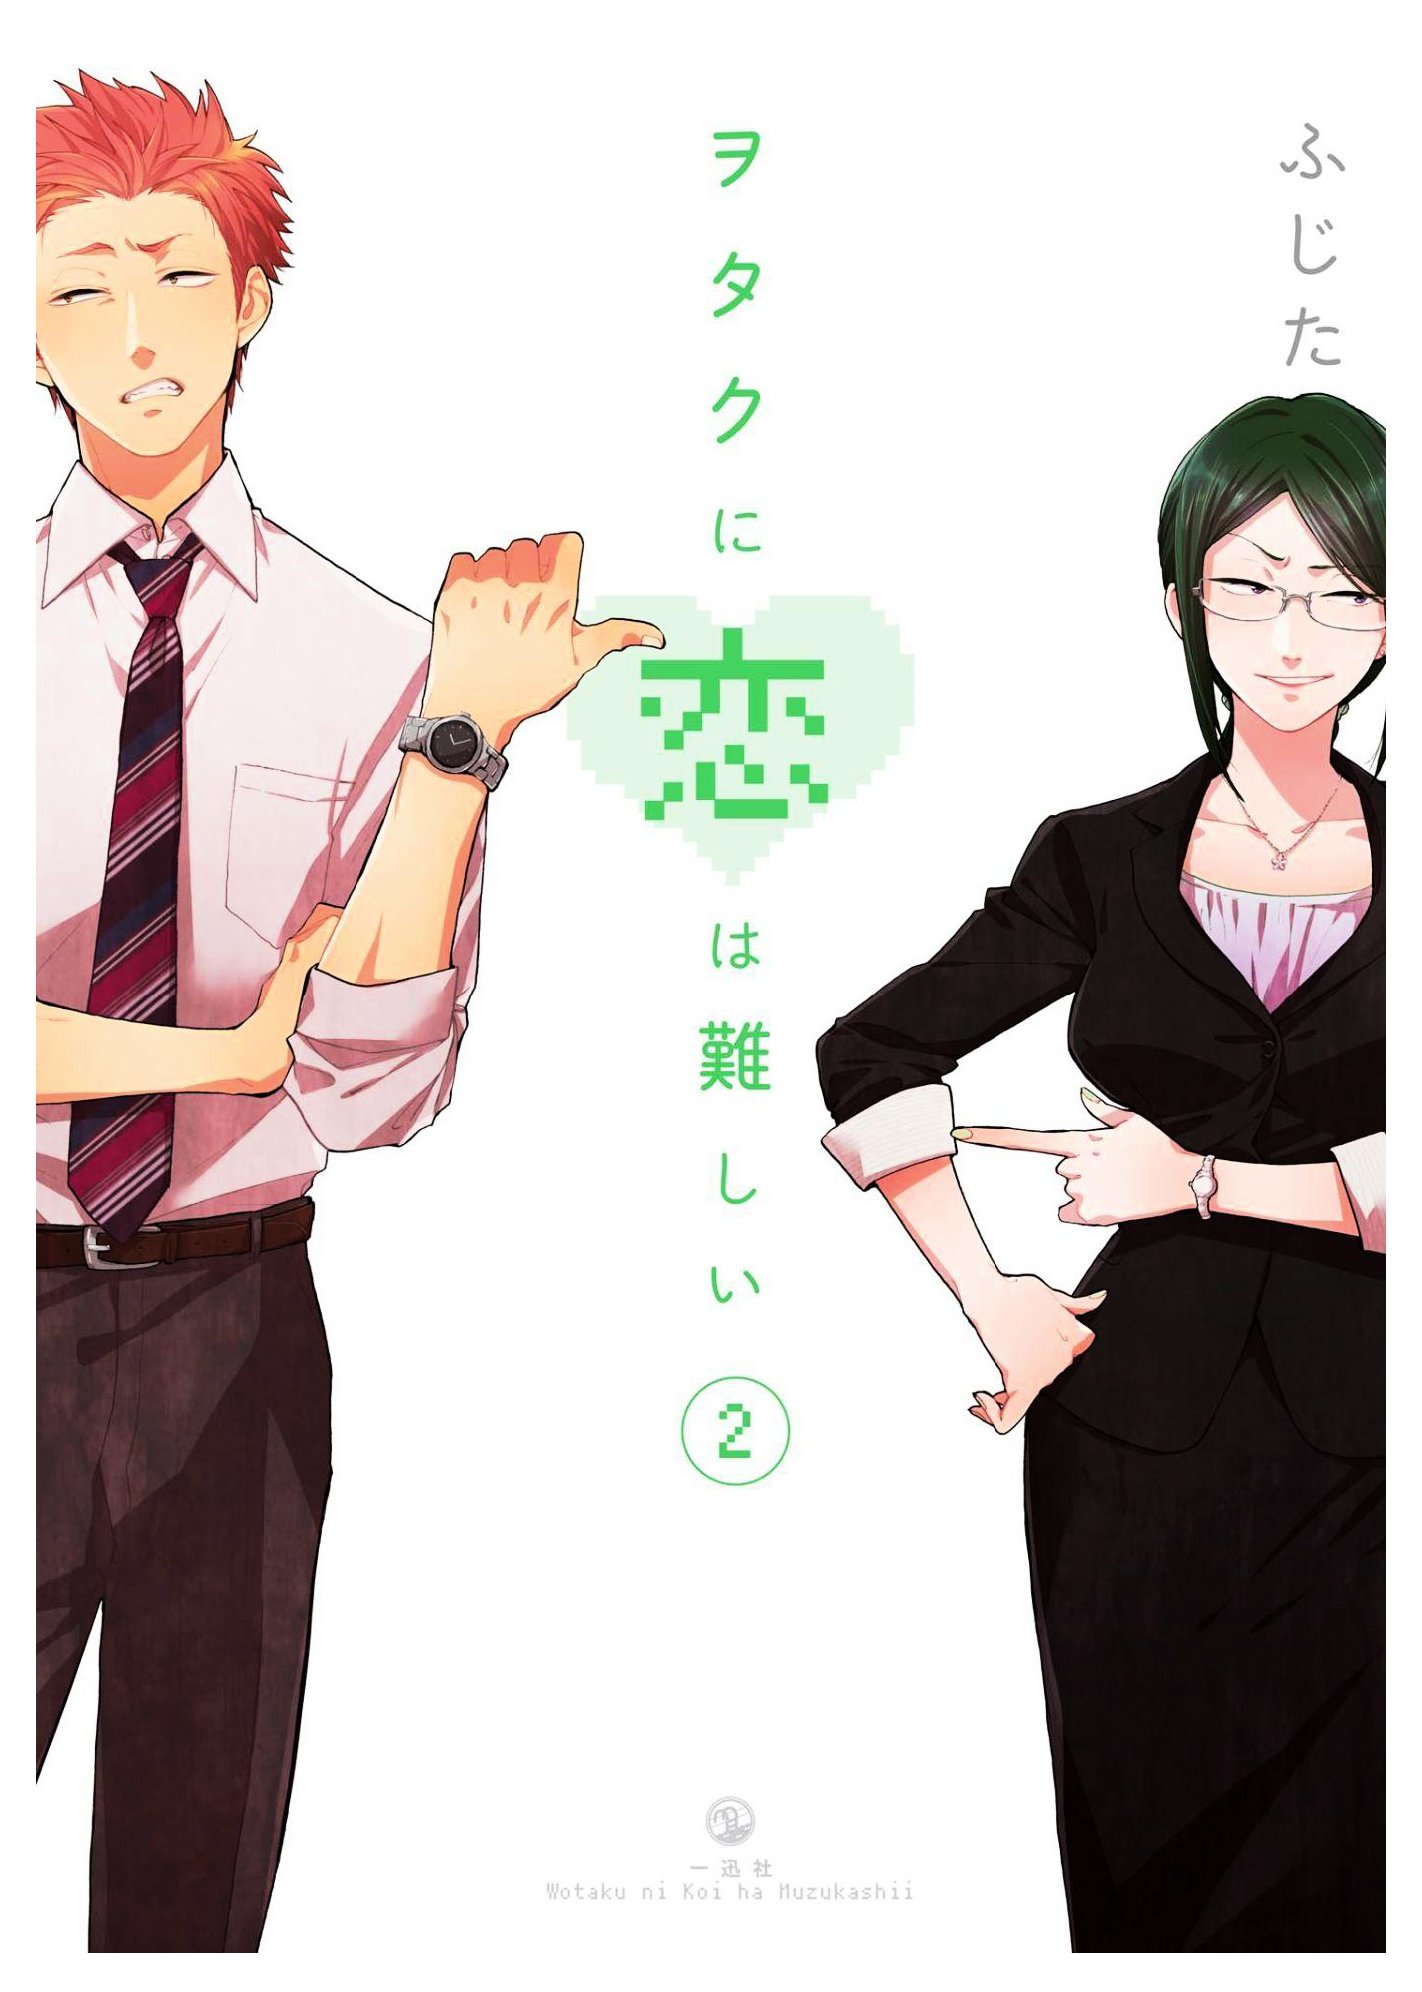 Read Wotaku ni Koi wa Muzukashii Manga English [New Chapters] Online Free -  MangaClash